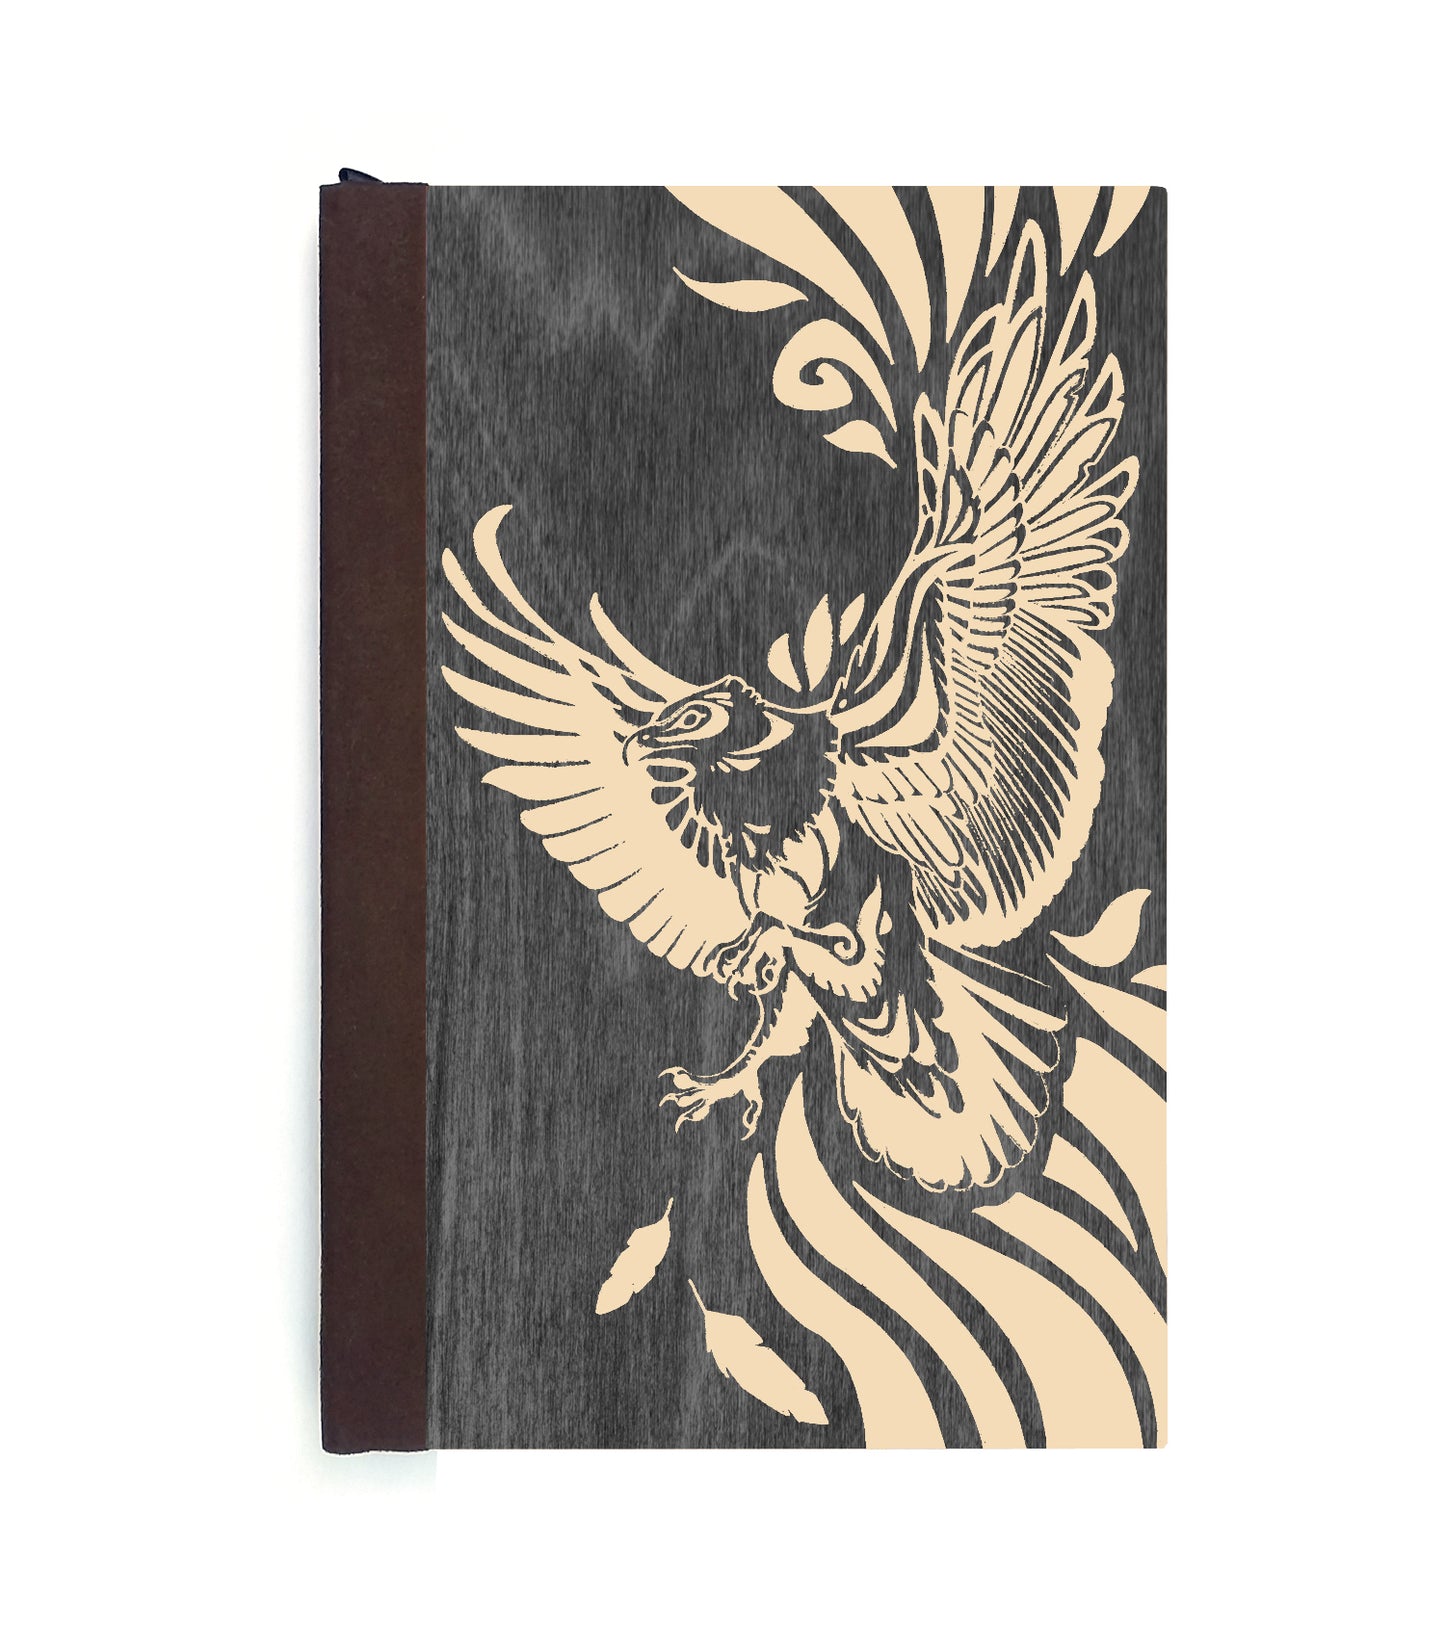 Soaring Eagle Magnetic Wooden Journal, Black & Cream